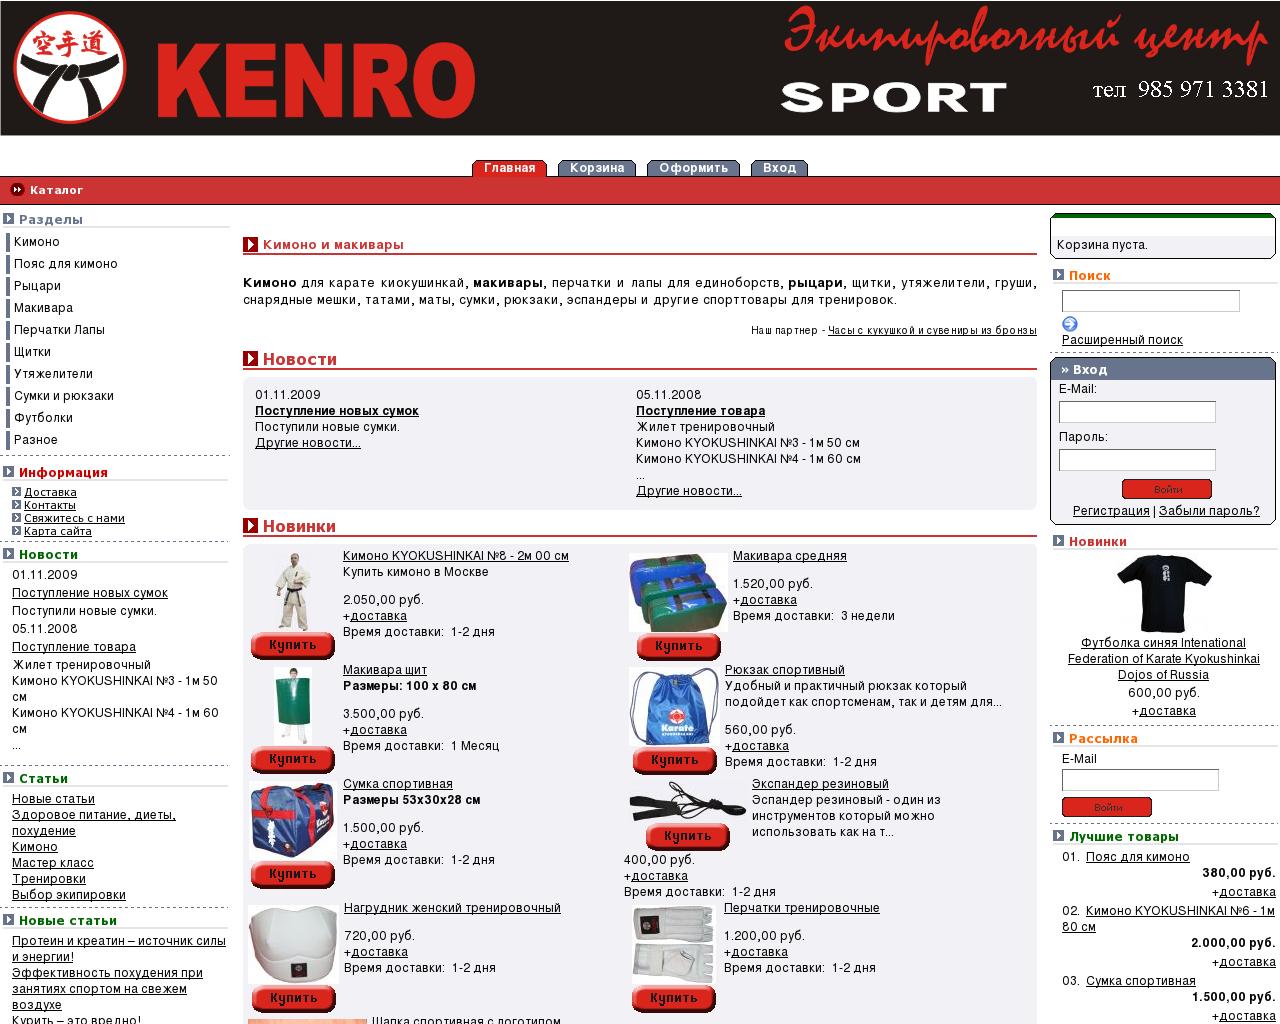 Изображение сайта kenrosport.ru в разрешении 1280x1024